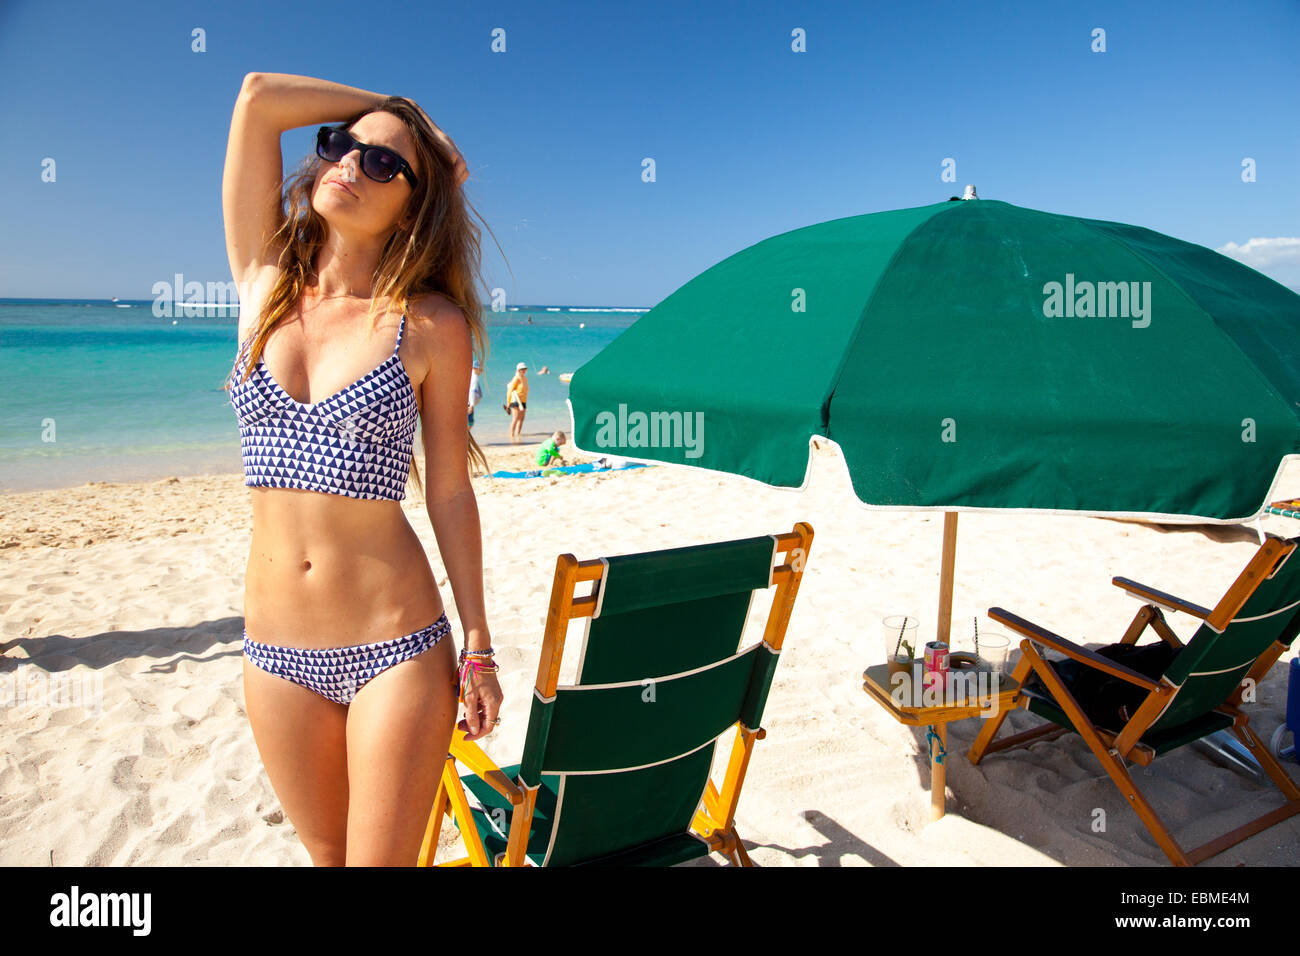 Attractive Woman standing on beach in bikini près de parasol Banque D'Images